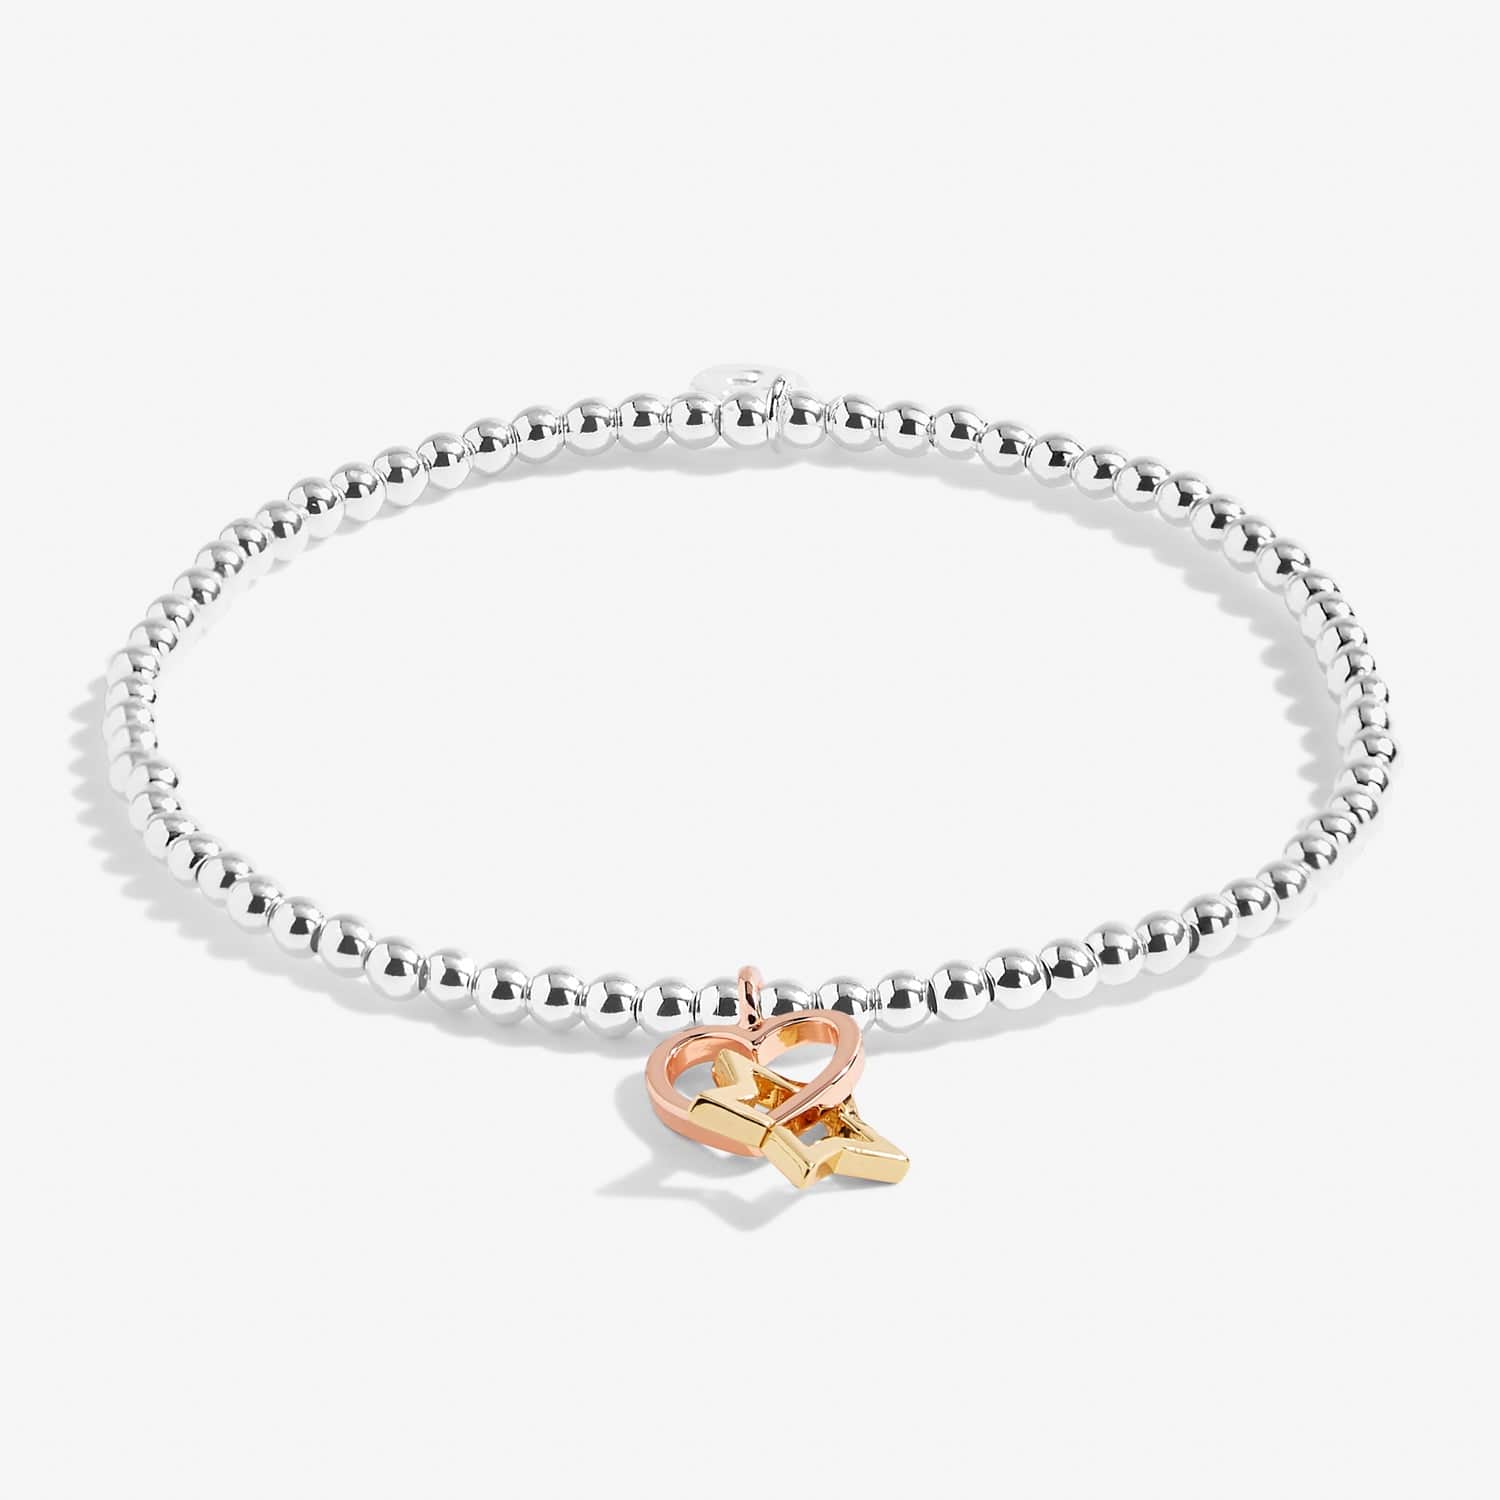 Joma Jewellery Bracelets Joma Jewellery Bracelet - A little Girl Power